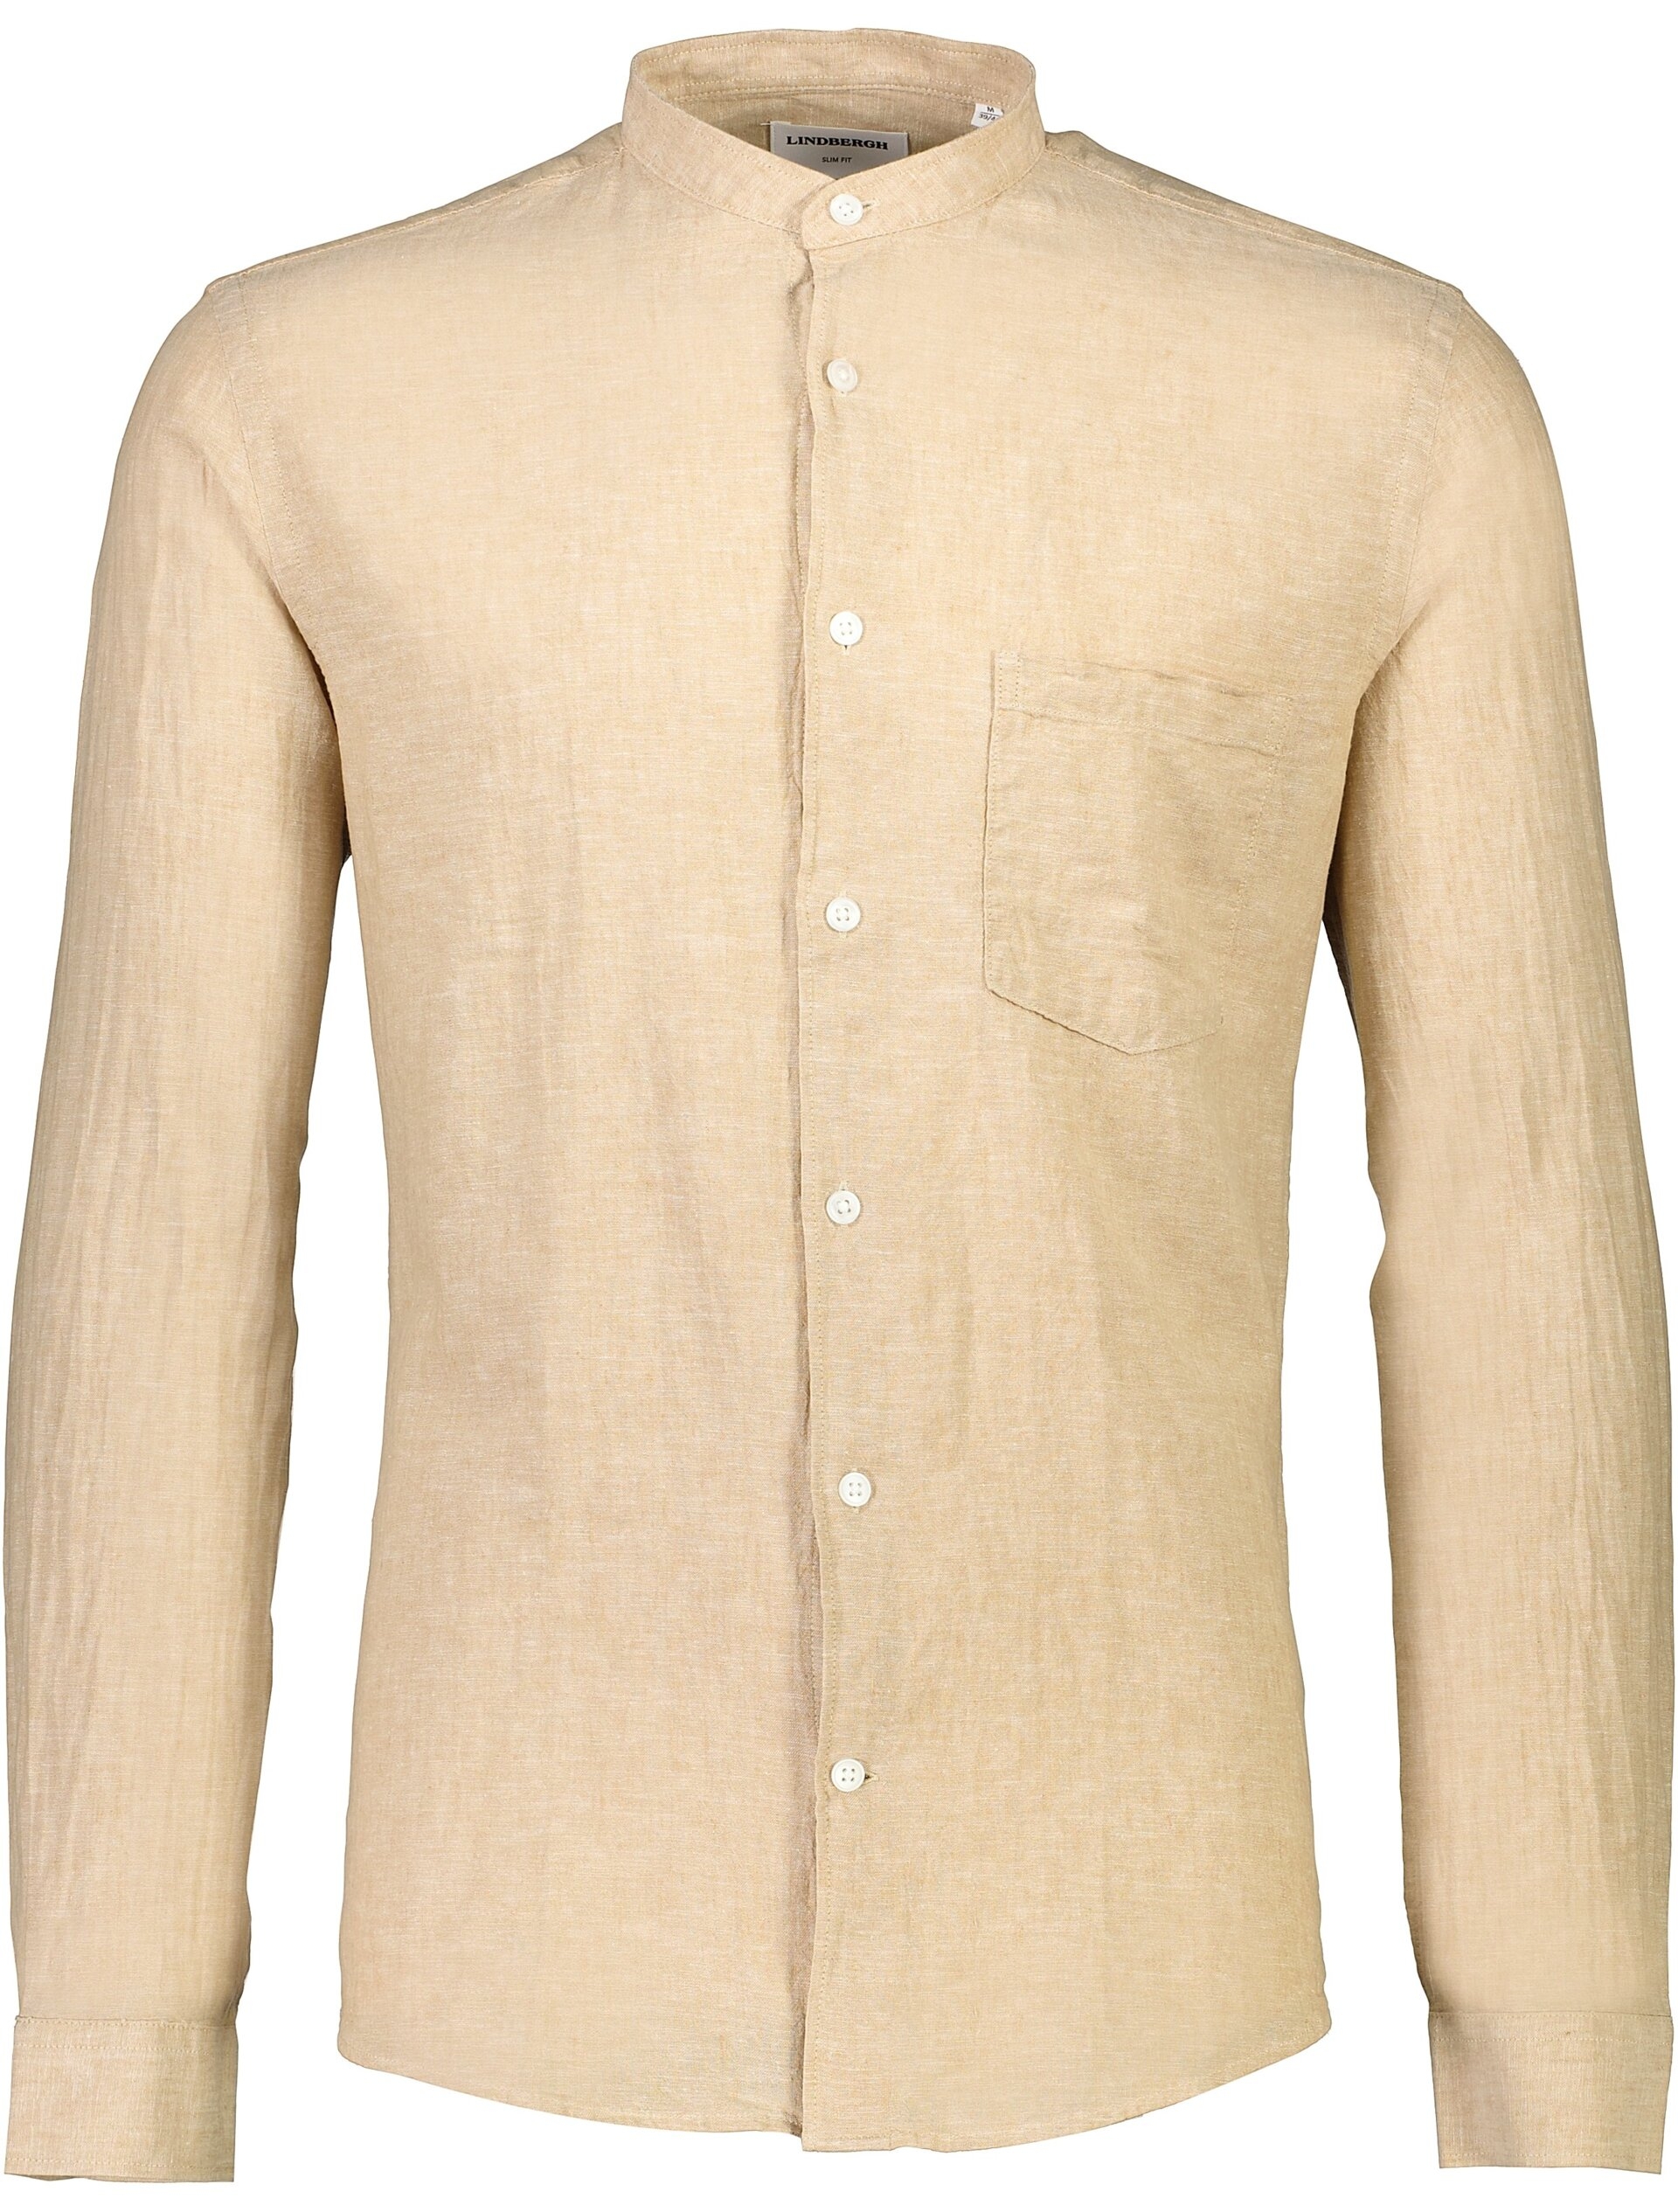 Lindbergh Linen shirt sand / sand